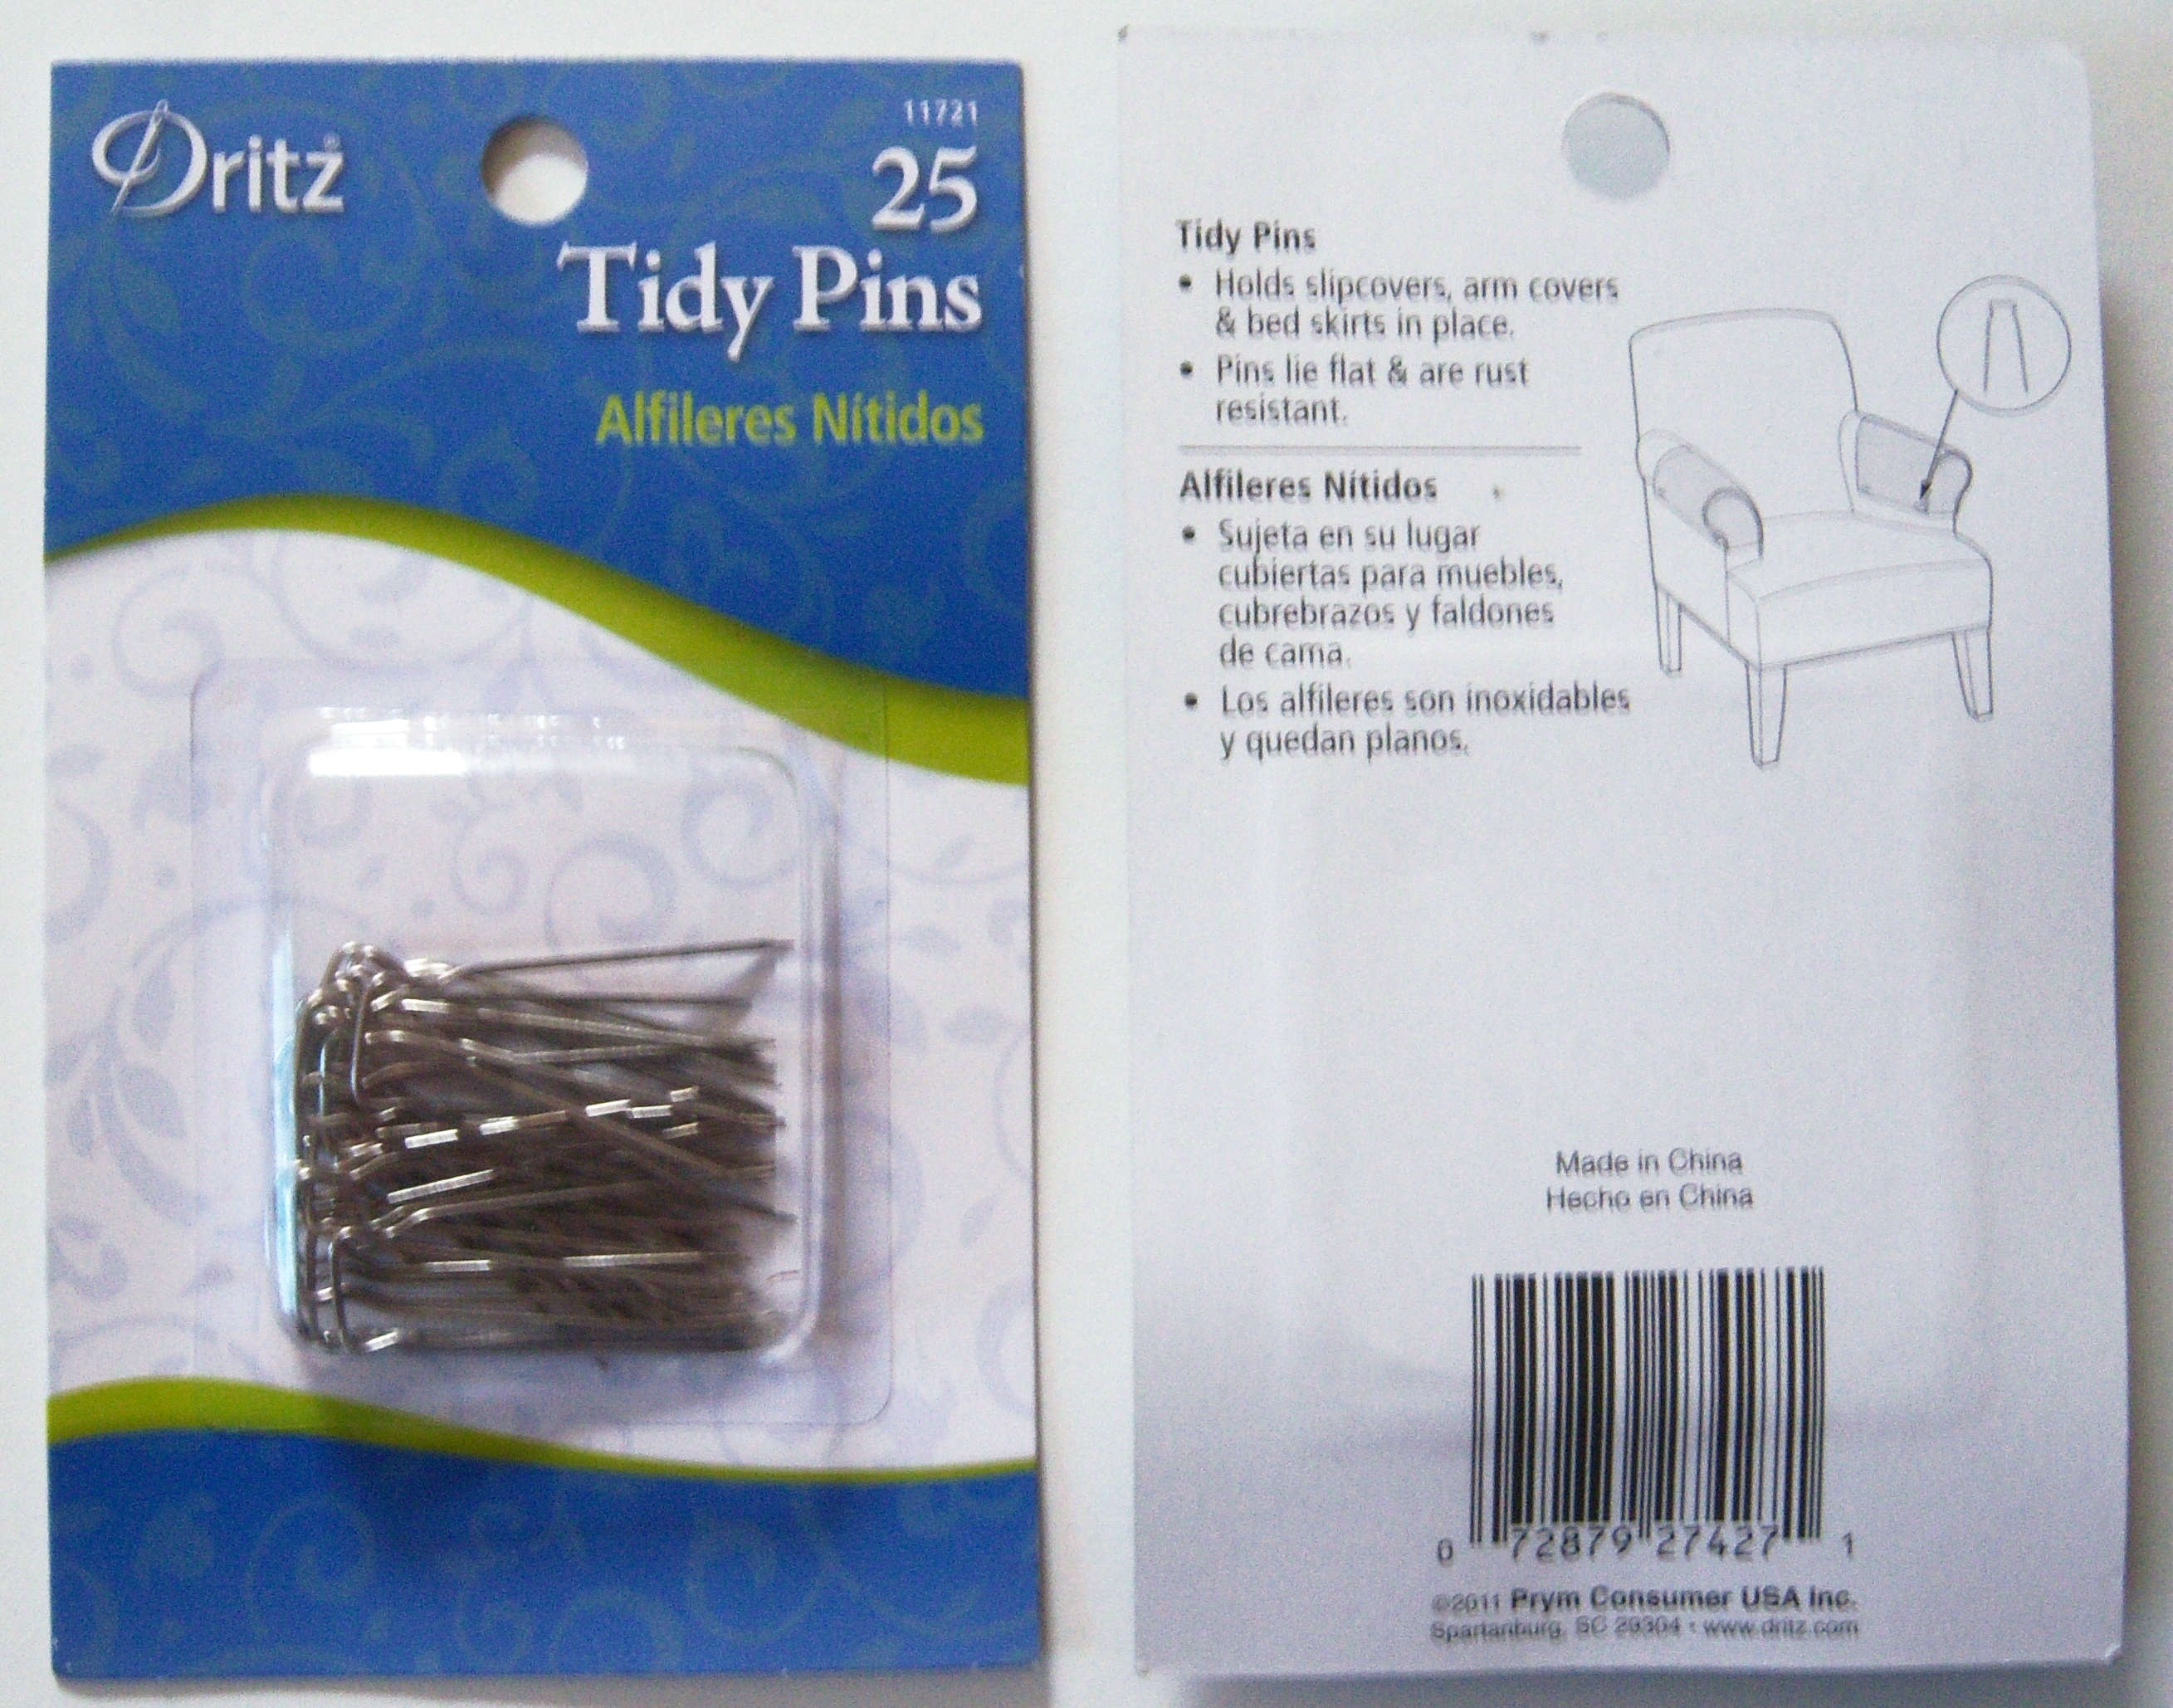 11721 Dritz 25 Tidy Pins